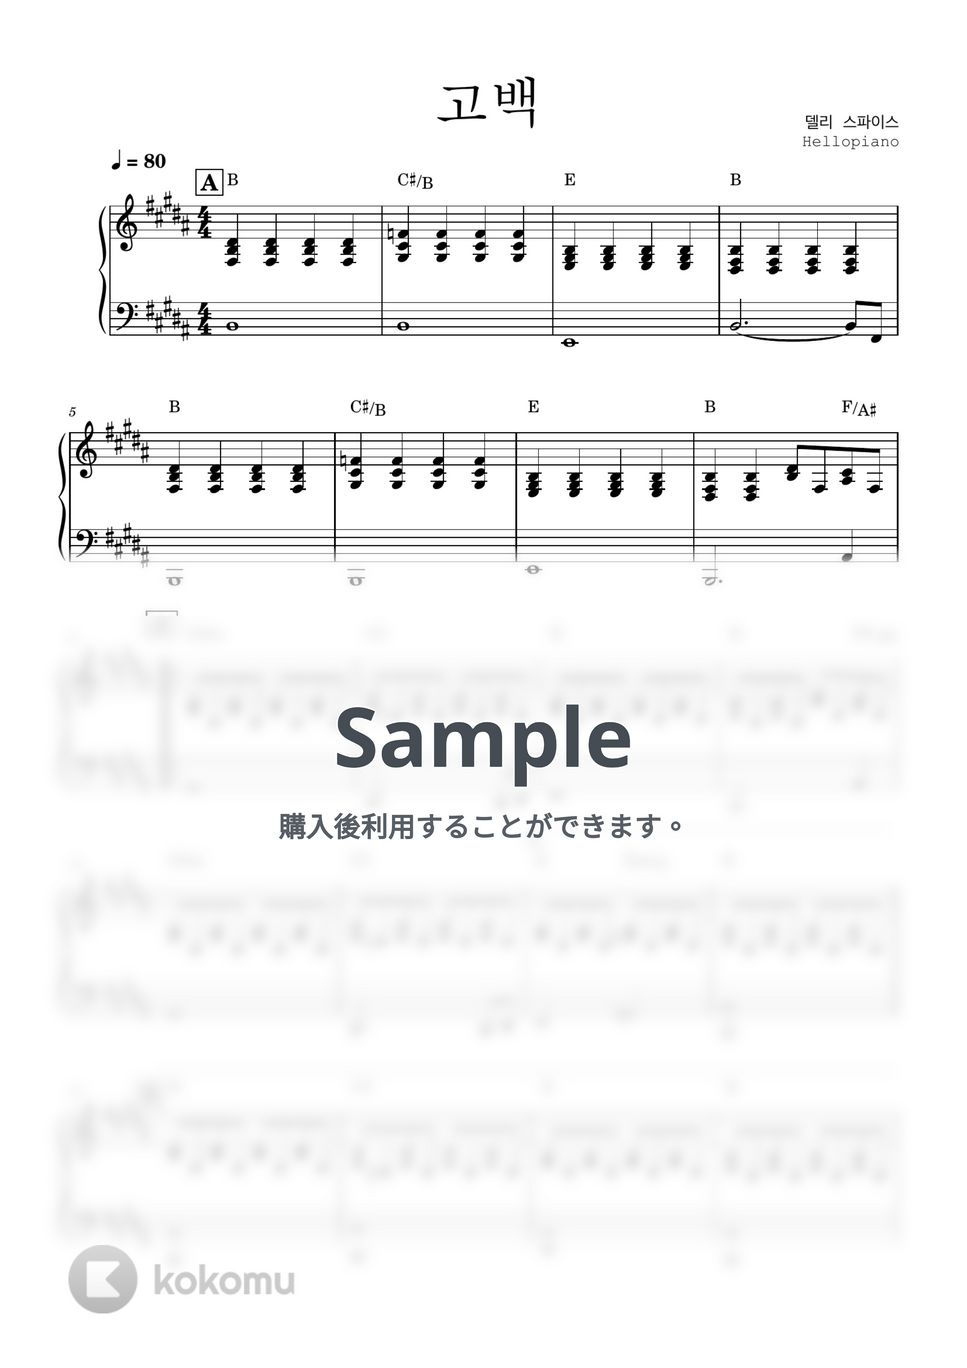 델리스파이스 - 고백 (Band piano ver.) by 헬로피아노